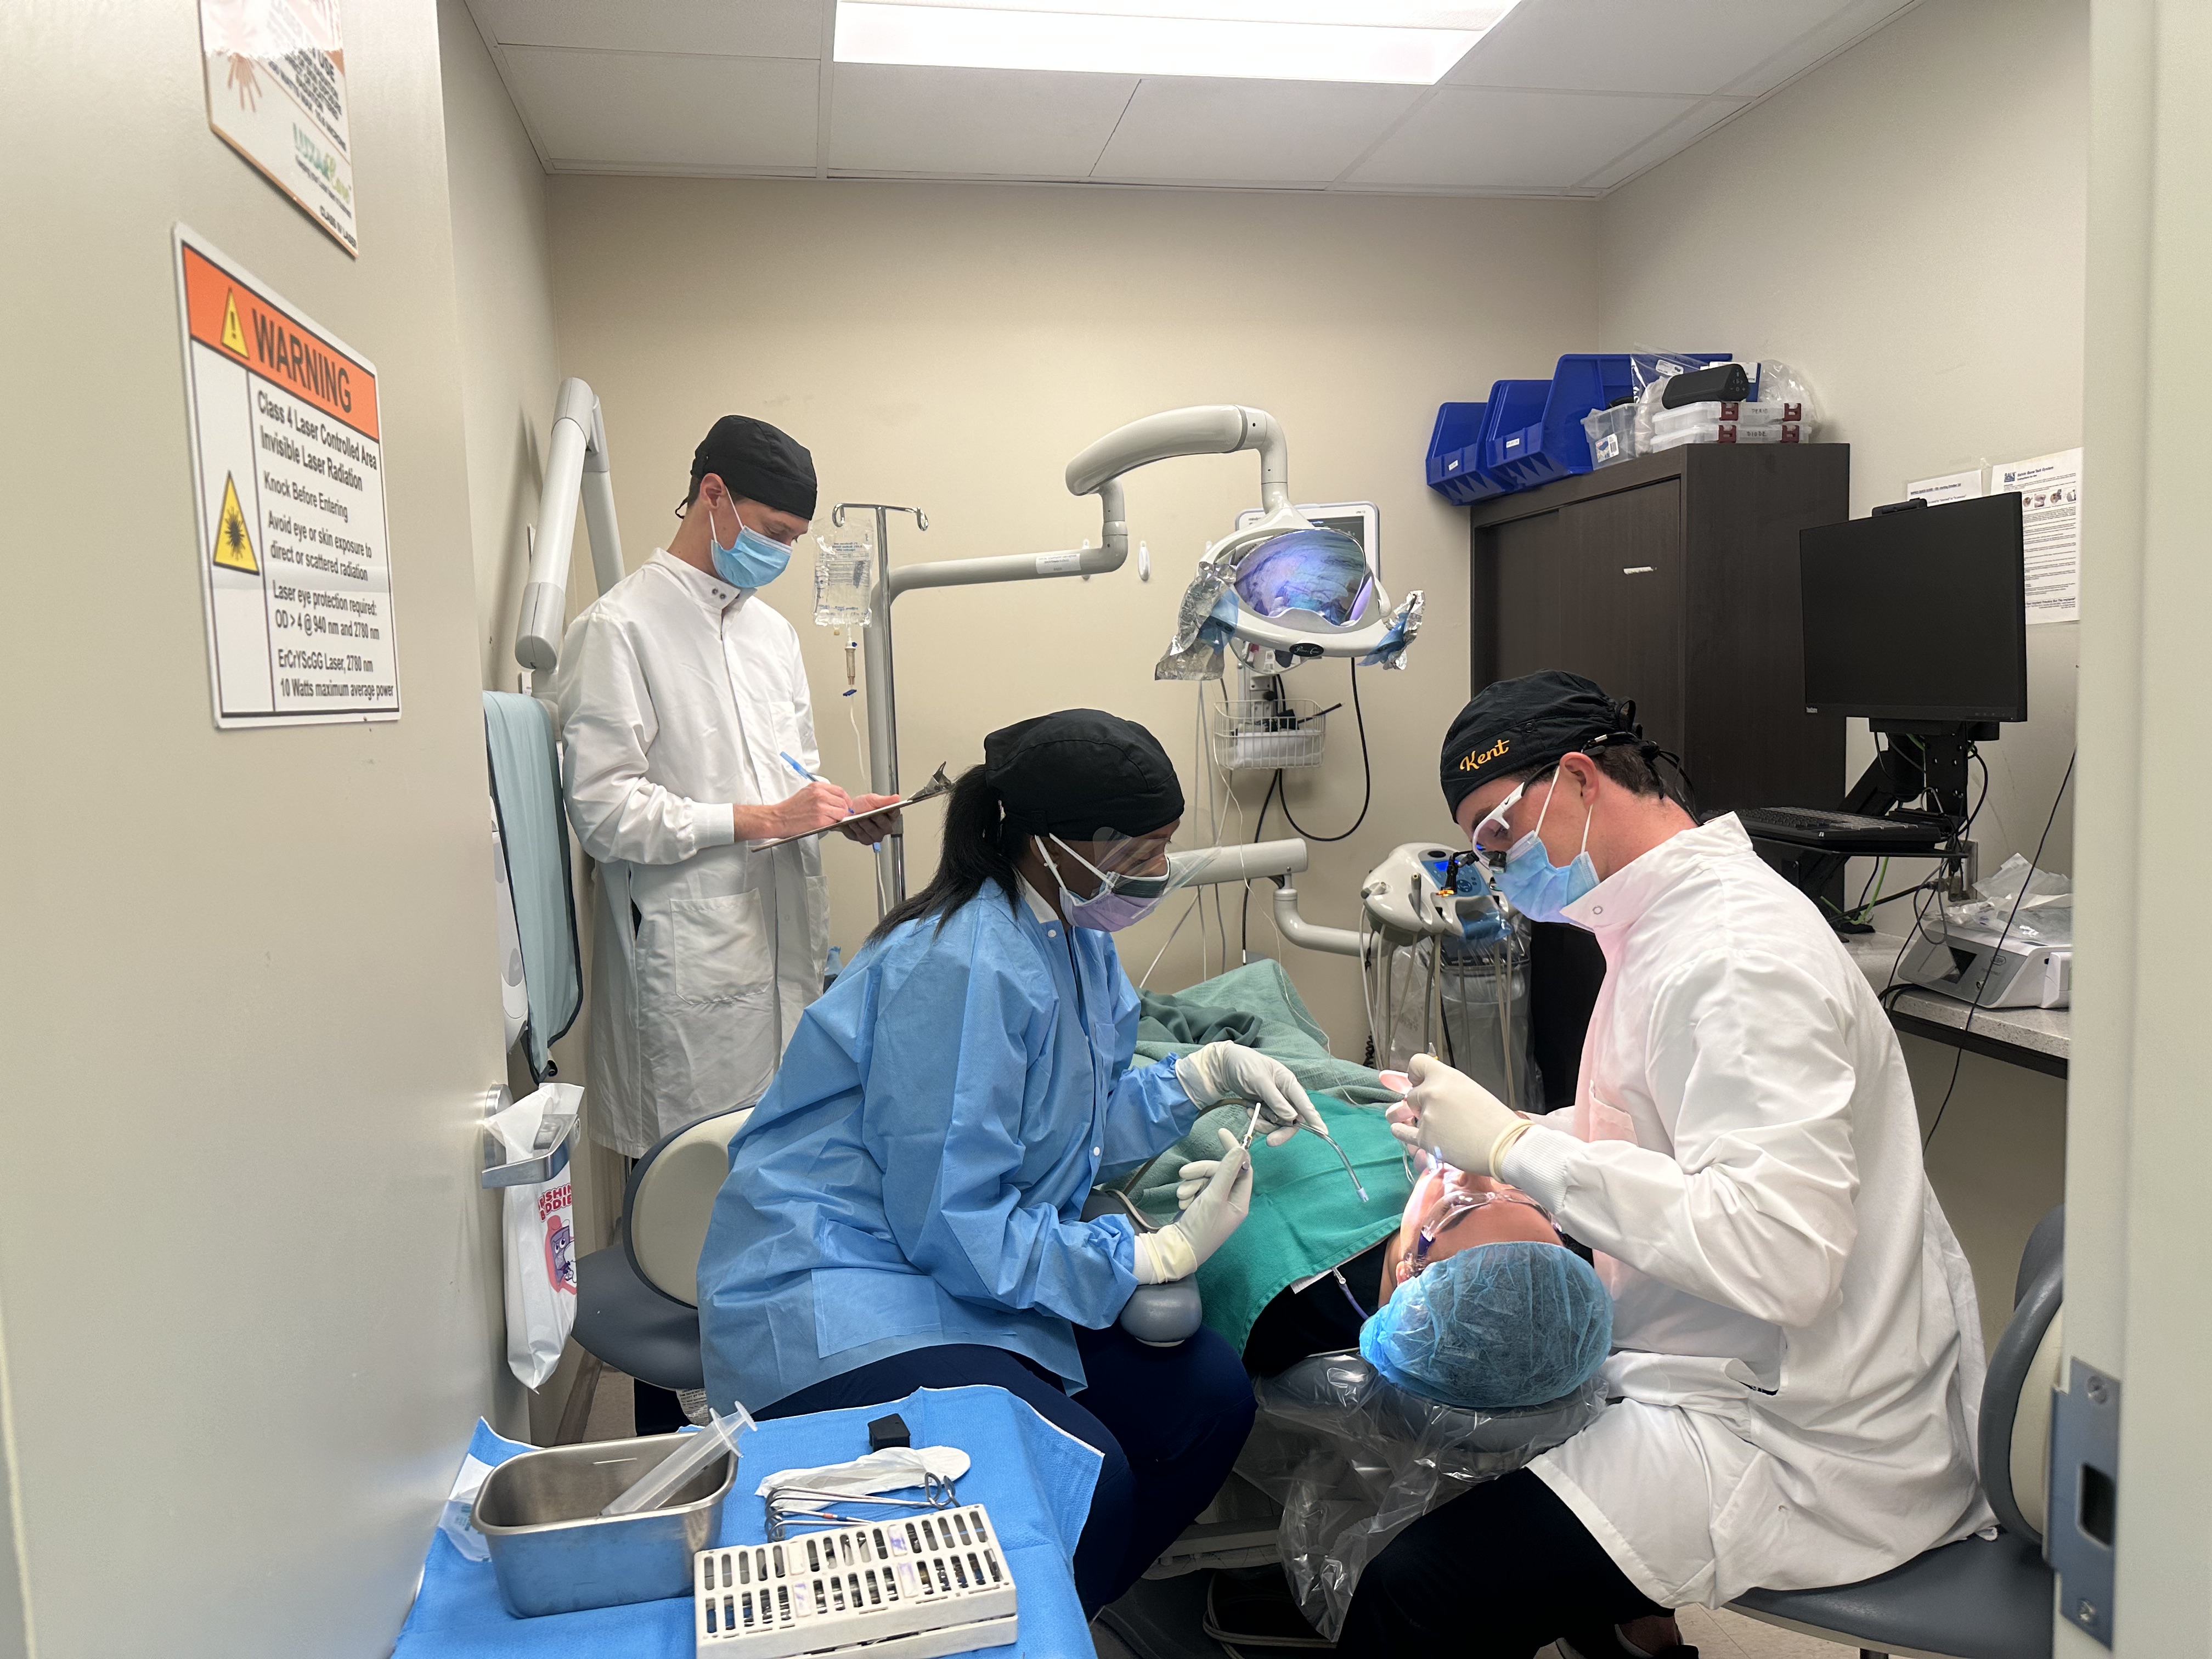 Periodotics graduate students performing a surgery.